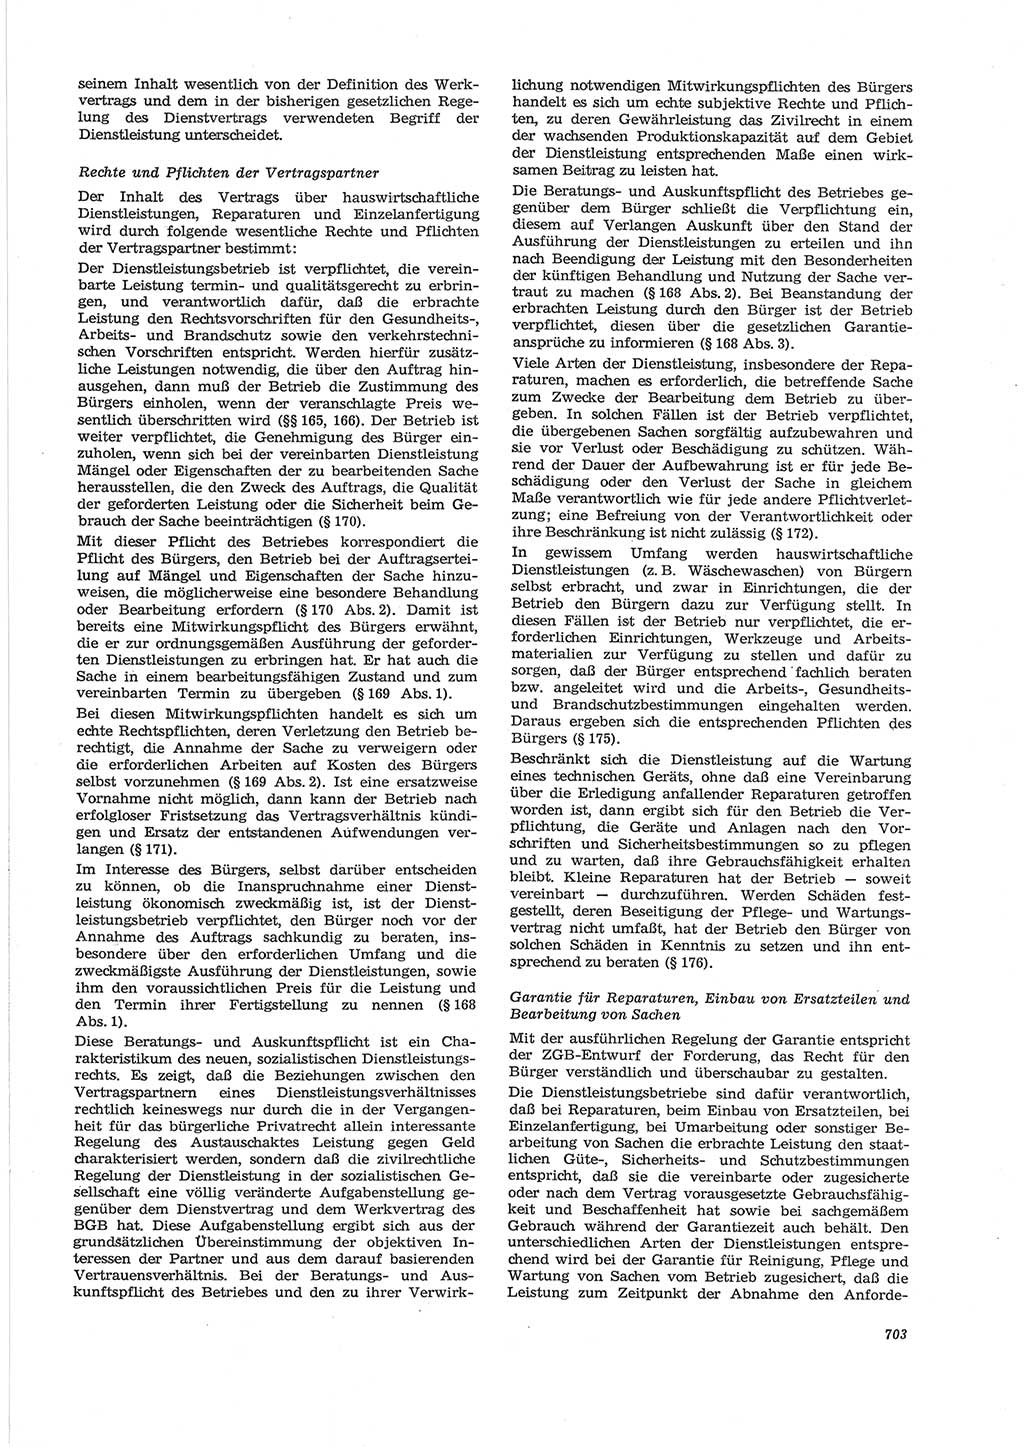 Neue Justiz (NJ), Zeitschrift für Recht und Rechtswissenschaft [Deutsche Demokratische Republik (DDR)], 28. Jahrgang 1974, Seite 703 (NJ DDR 1974, S. 703)